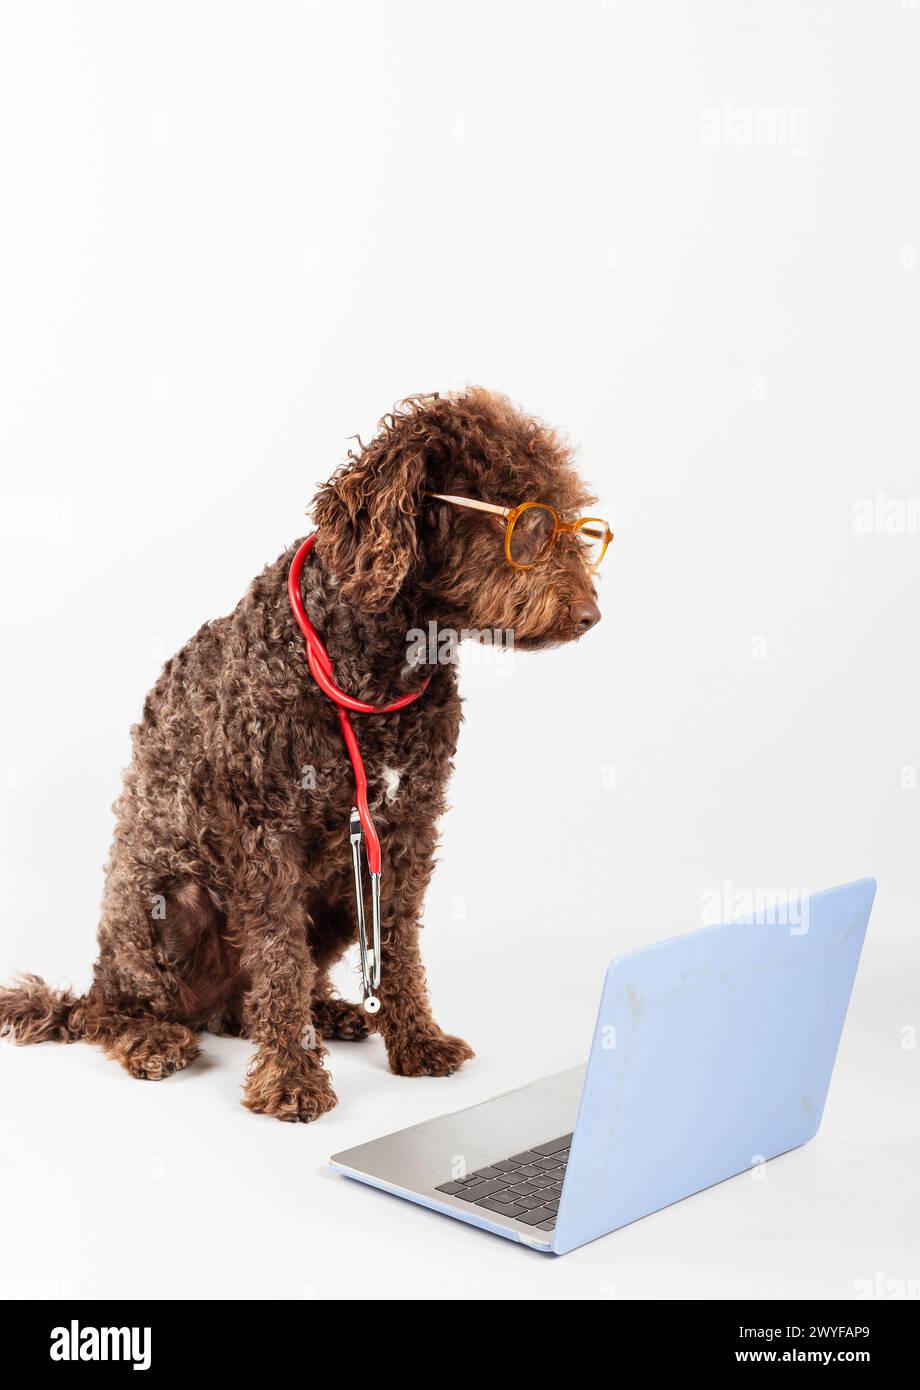 Ein Wasserhund mit Brille, Stethoskop und Laptop auf weißem Hintergrund. Haustiergesundheitskonzept. Stockfoto